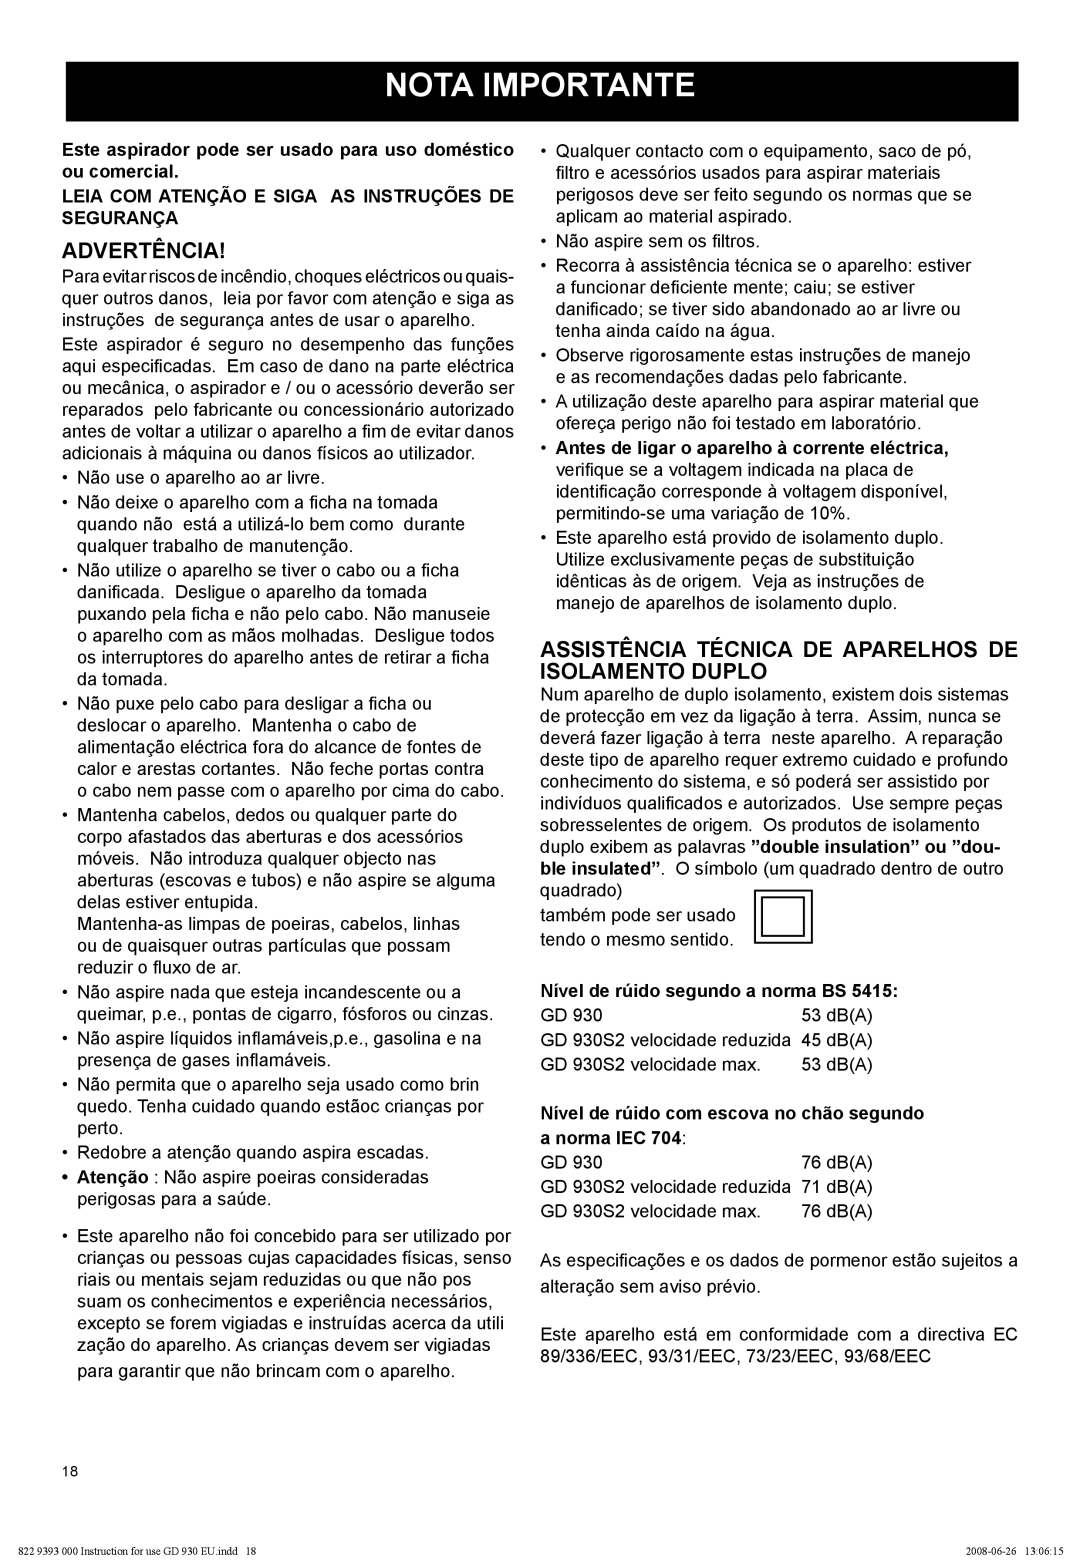 Nilfisk-Advance America GD 930S2 manual Nota Importante, Advertência 